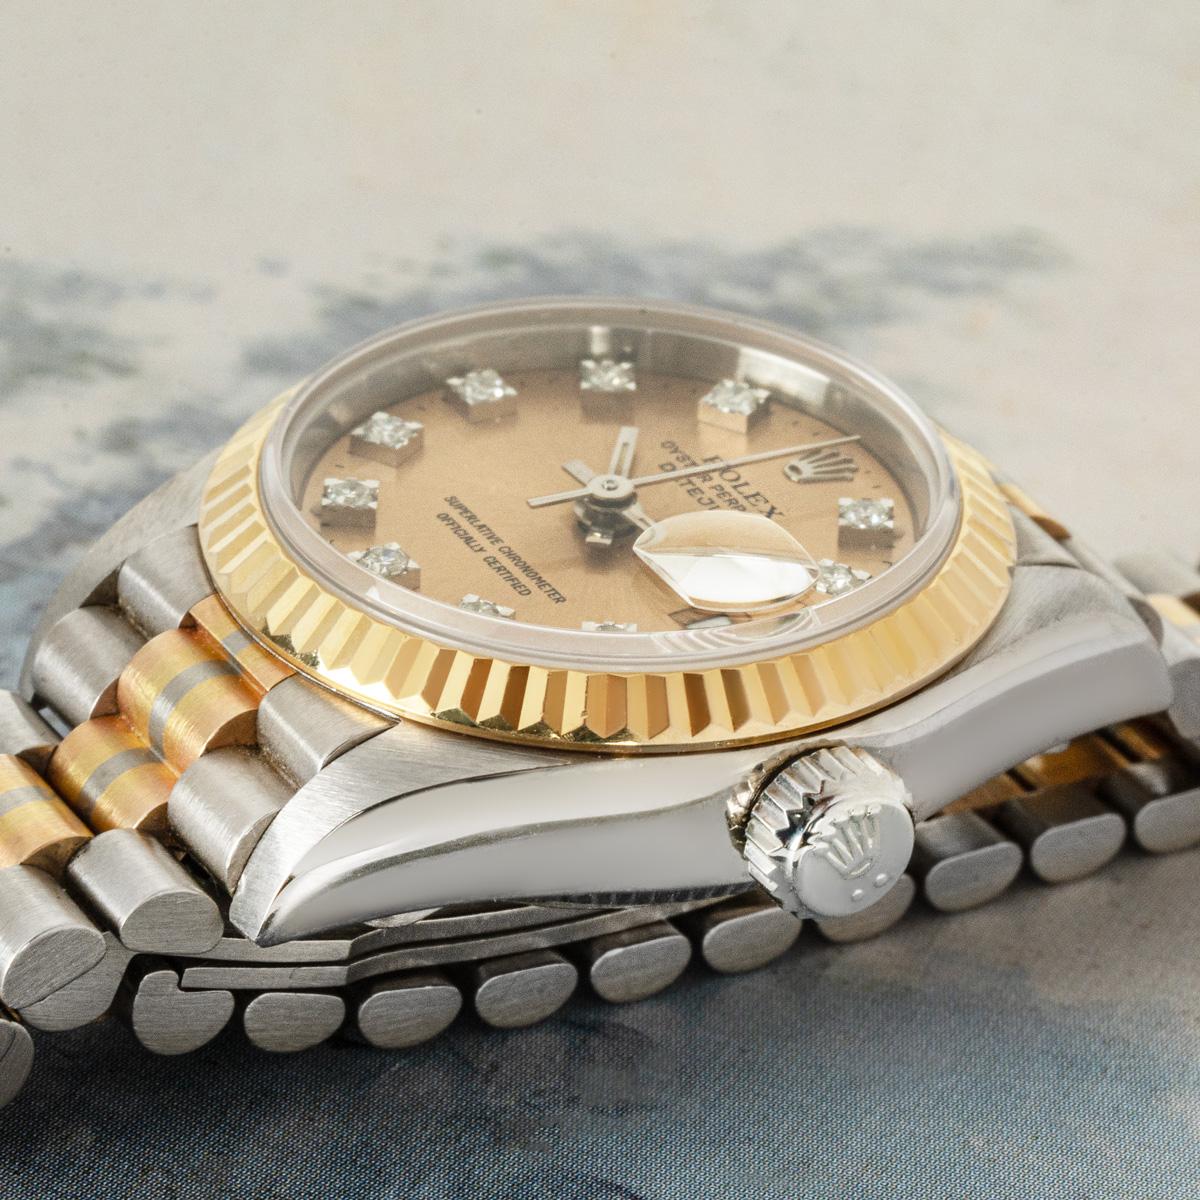 Eine 26-mm-Datejust aus Dreifachgold von Rolex. Das champagnerfarbene Zifferblatt mit diamantbesetzten Indexen wird durch eine feste, geriffelte Lünette aus Gelbgold ergänzt.

Der mit Saphirglas und einem Automatikwerk ausgestattete Zeitmesser wird